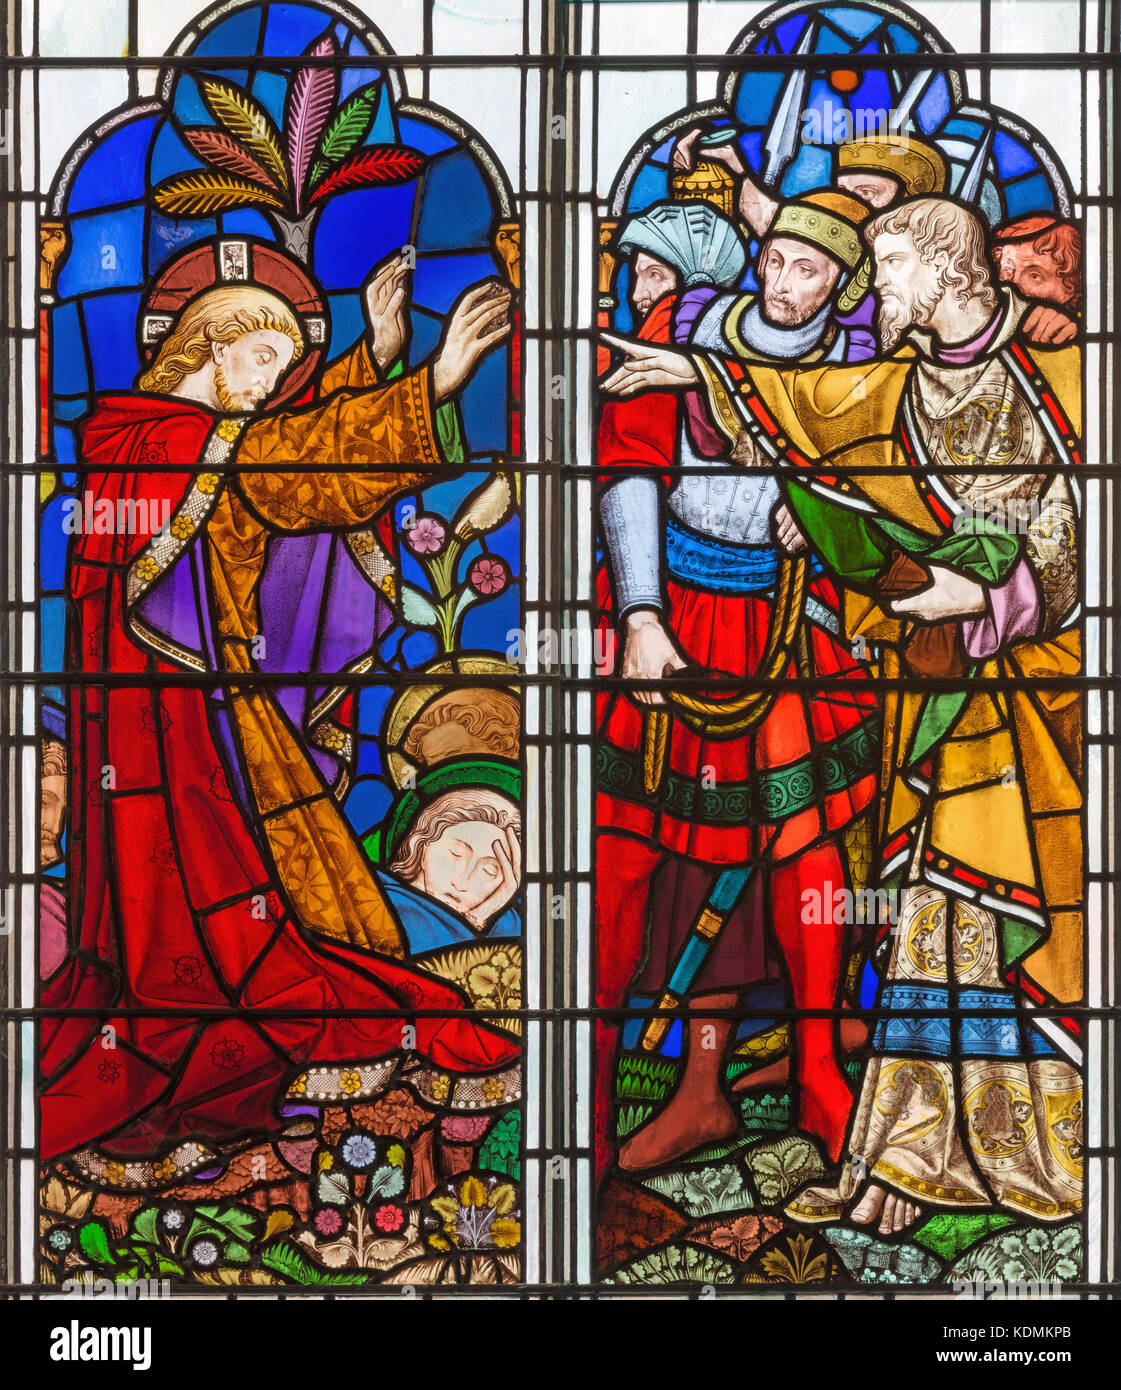 Londra, Gran Bretagna - 14 settembre 2017: l'arresto di Gesù nel Getsemani giardino sul vetro macchiato nella chiesa di st. Michael cornhill. Foto Stock